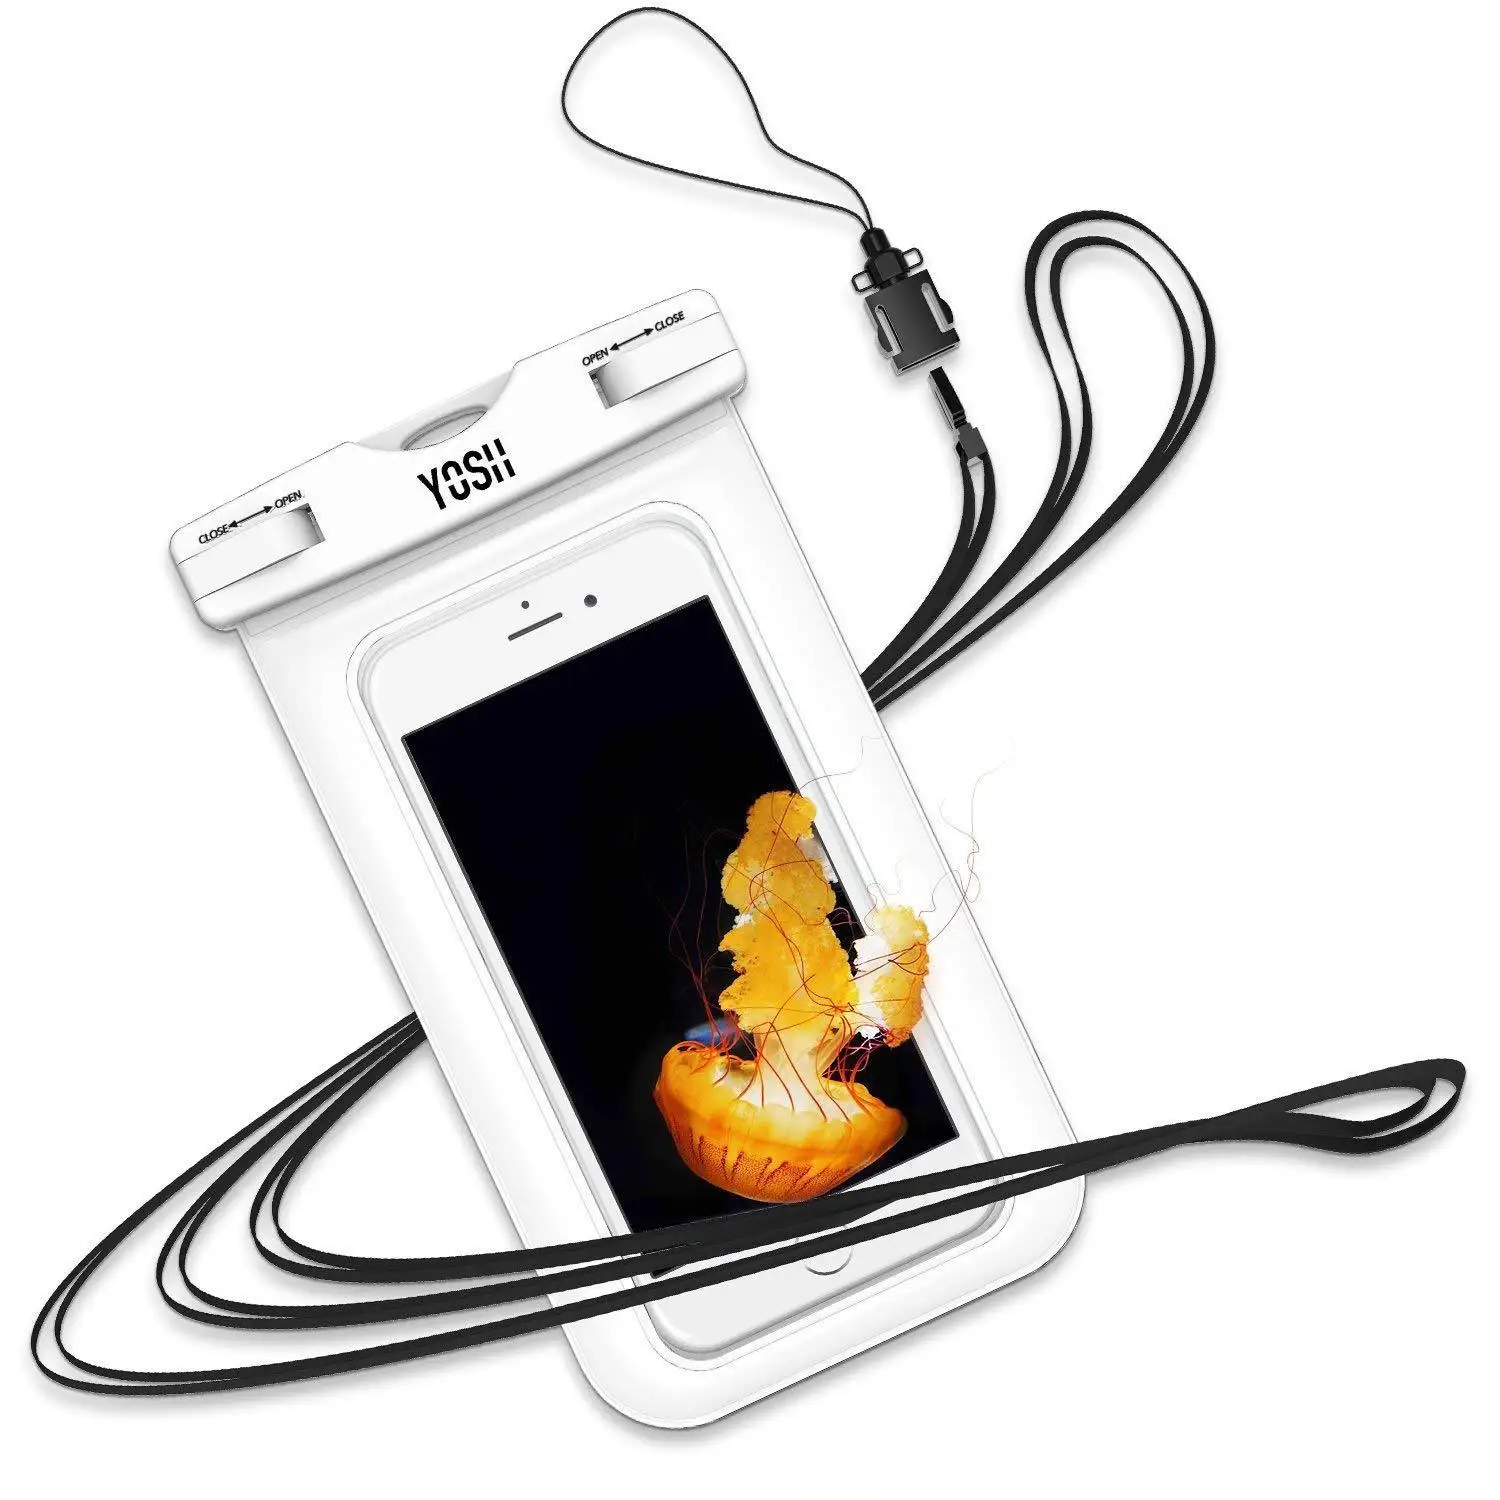 YOSH водонепроницаемый чехол для телефона IPX8 водонепроницаемый герметичный подводный сотовый телефон сумка с карманами для сушки чехол для iPhone X XS 7 8 samsung S9 S8